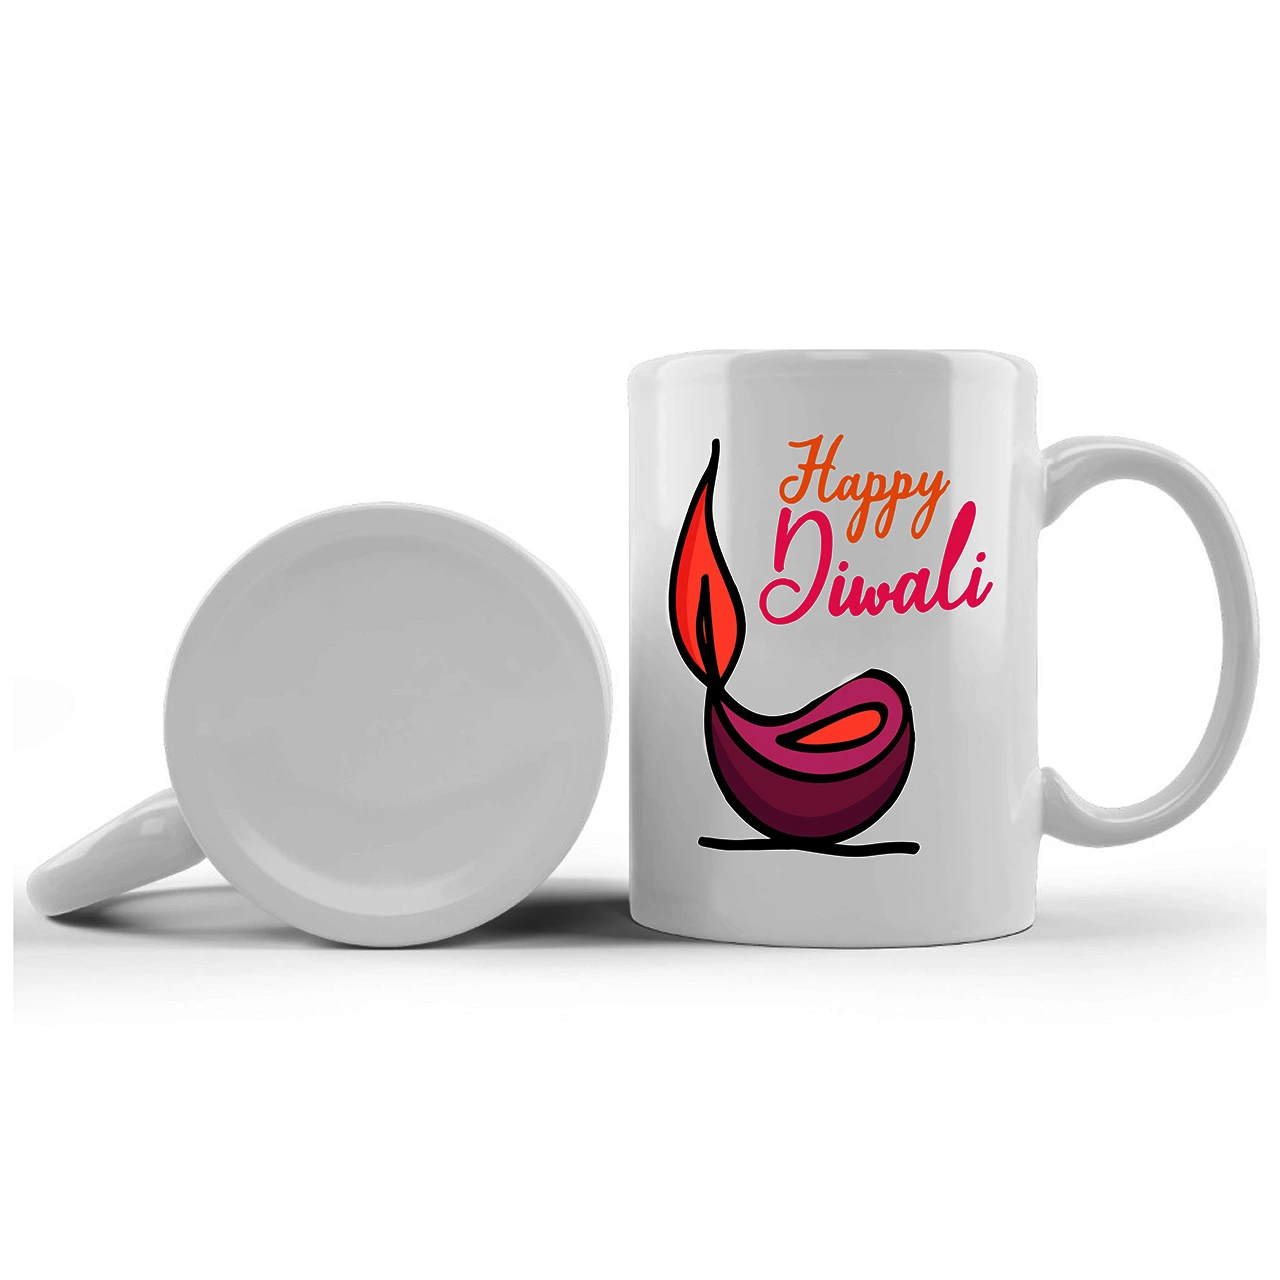 Happy Diwali Printed Ceramic Mug Gifts for | Diwali Gifts, Diwali Gift Items, Diwali Gifts for Friends, Diwali Gifts for Friends and Family, Gifts for Diwali (Design 1)